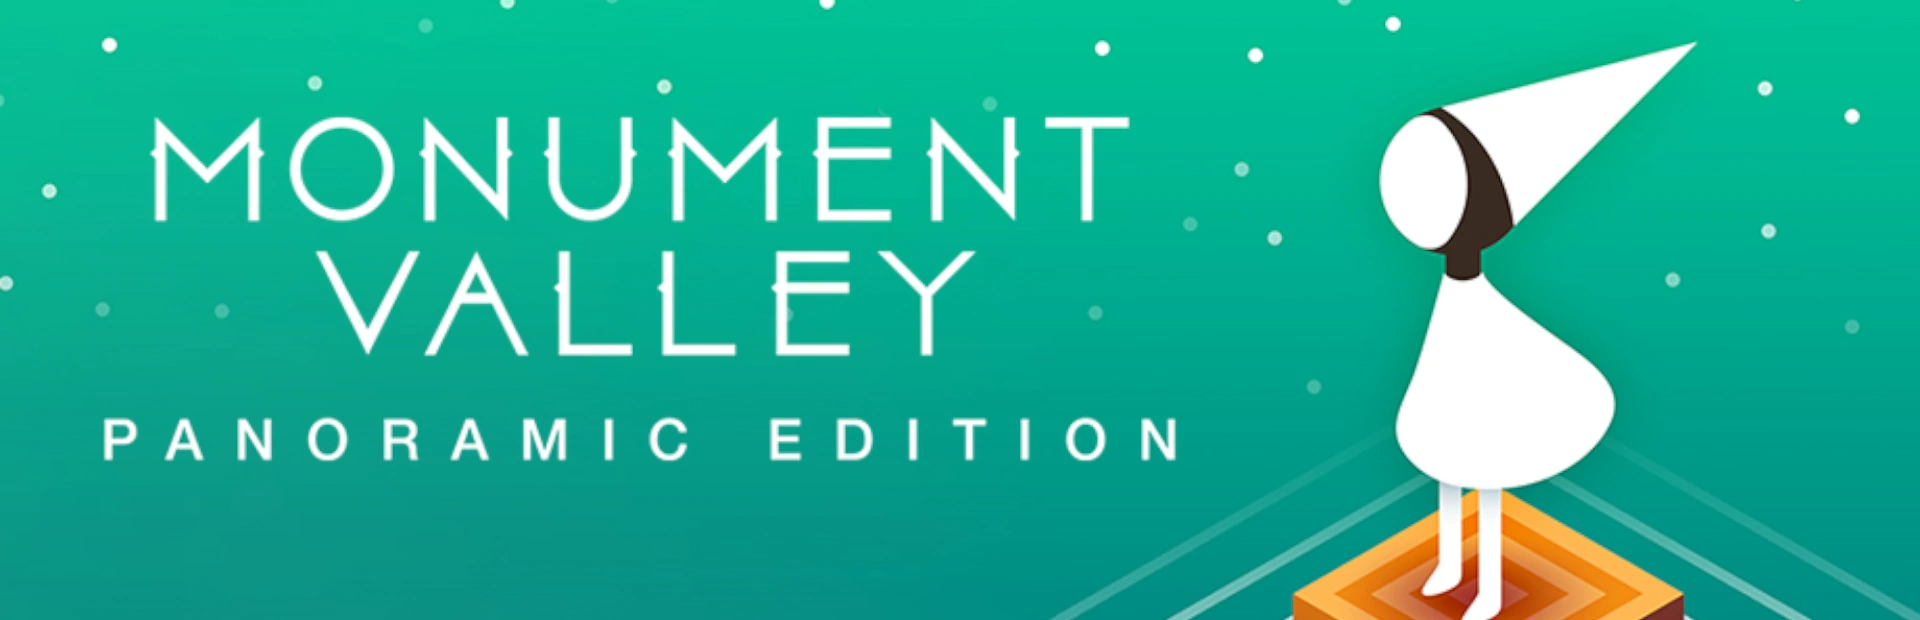 دانلود بازی Monument Valley: Panoramic Edition برای کامپیوتر | گیمباتو